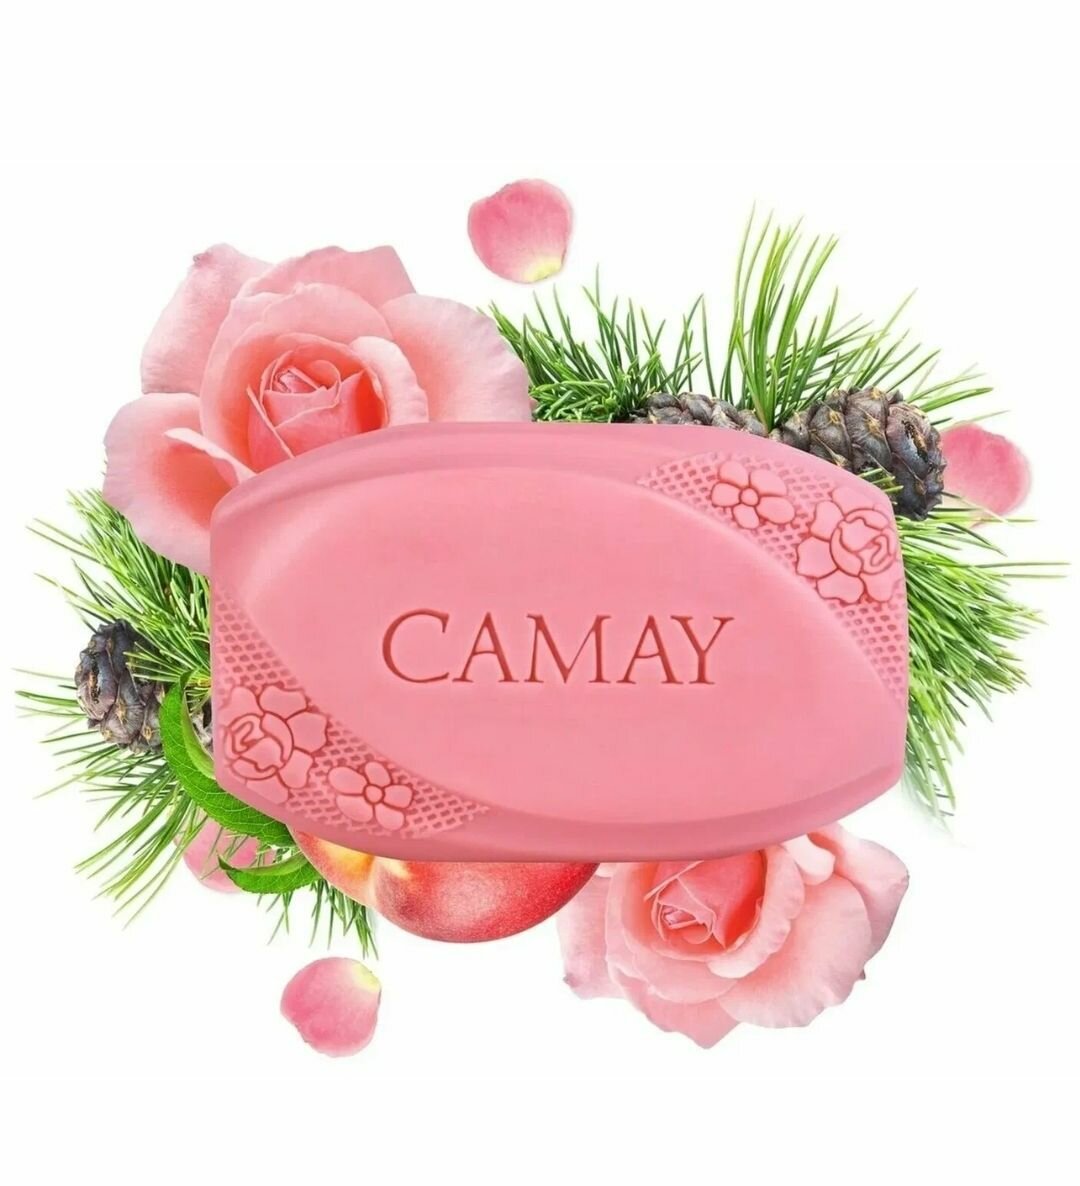 Мыло Camay French Romantique 85г Unilever - фото №13